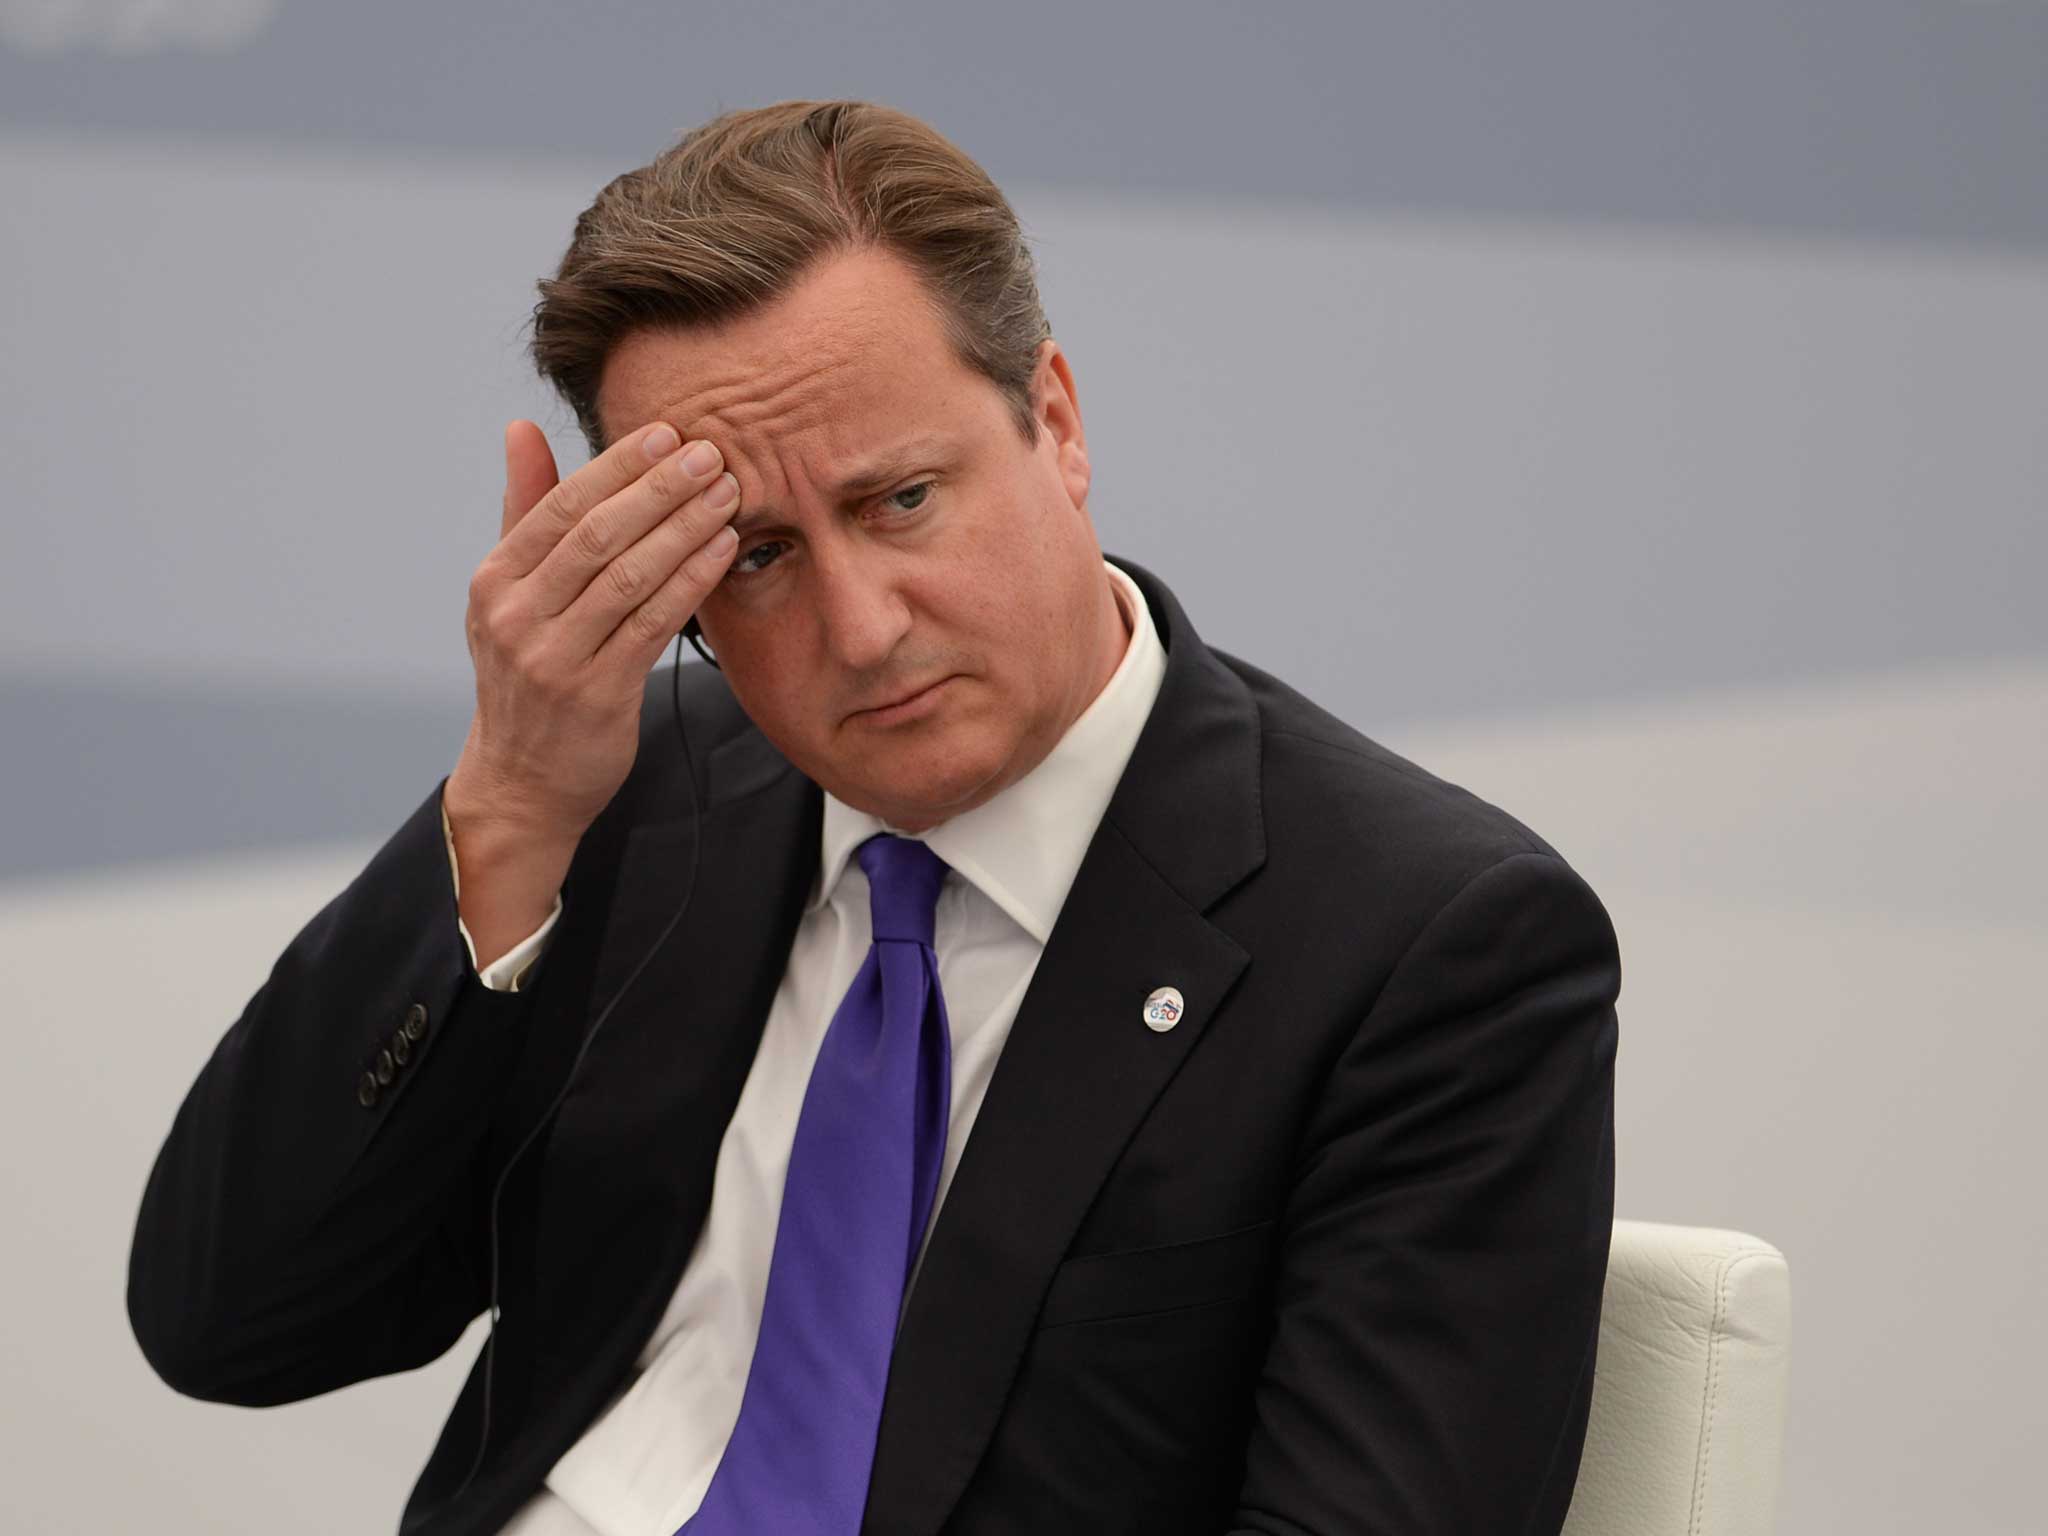 David Cameron at the G20 summit